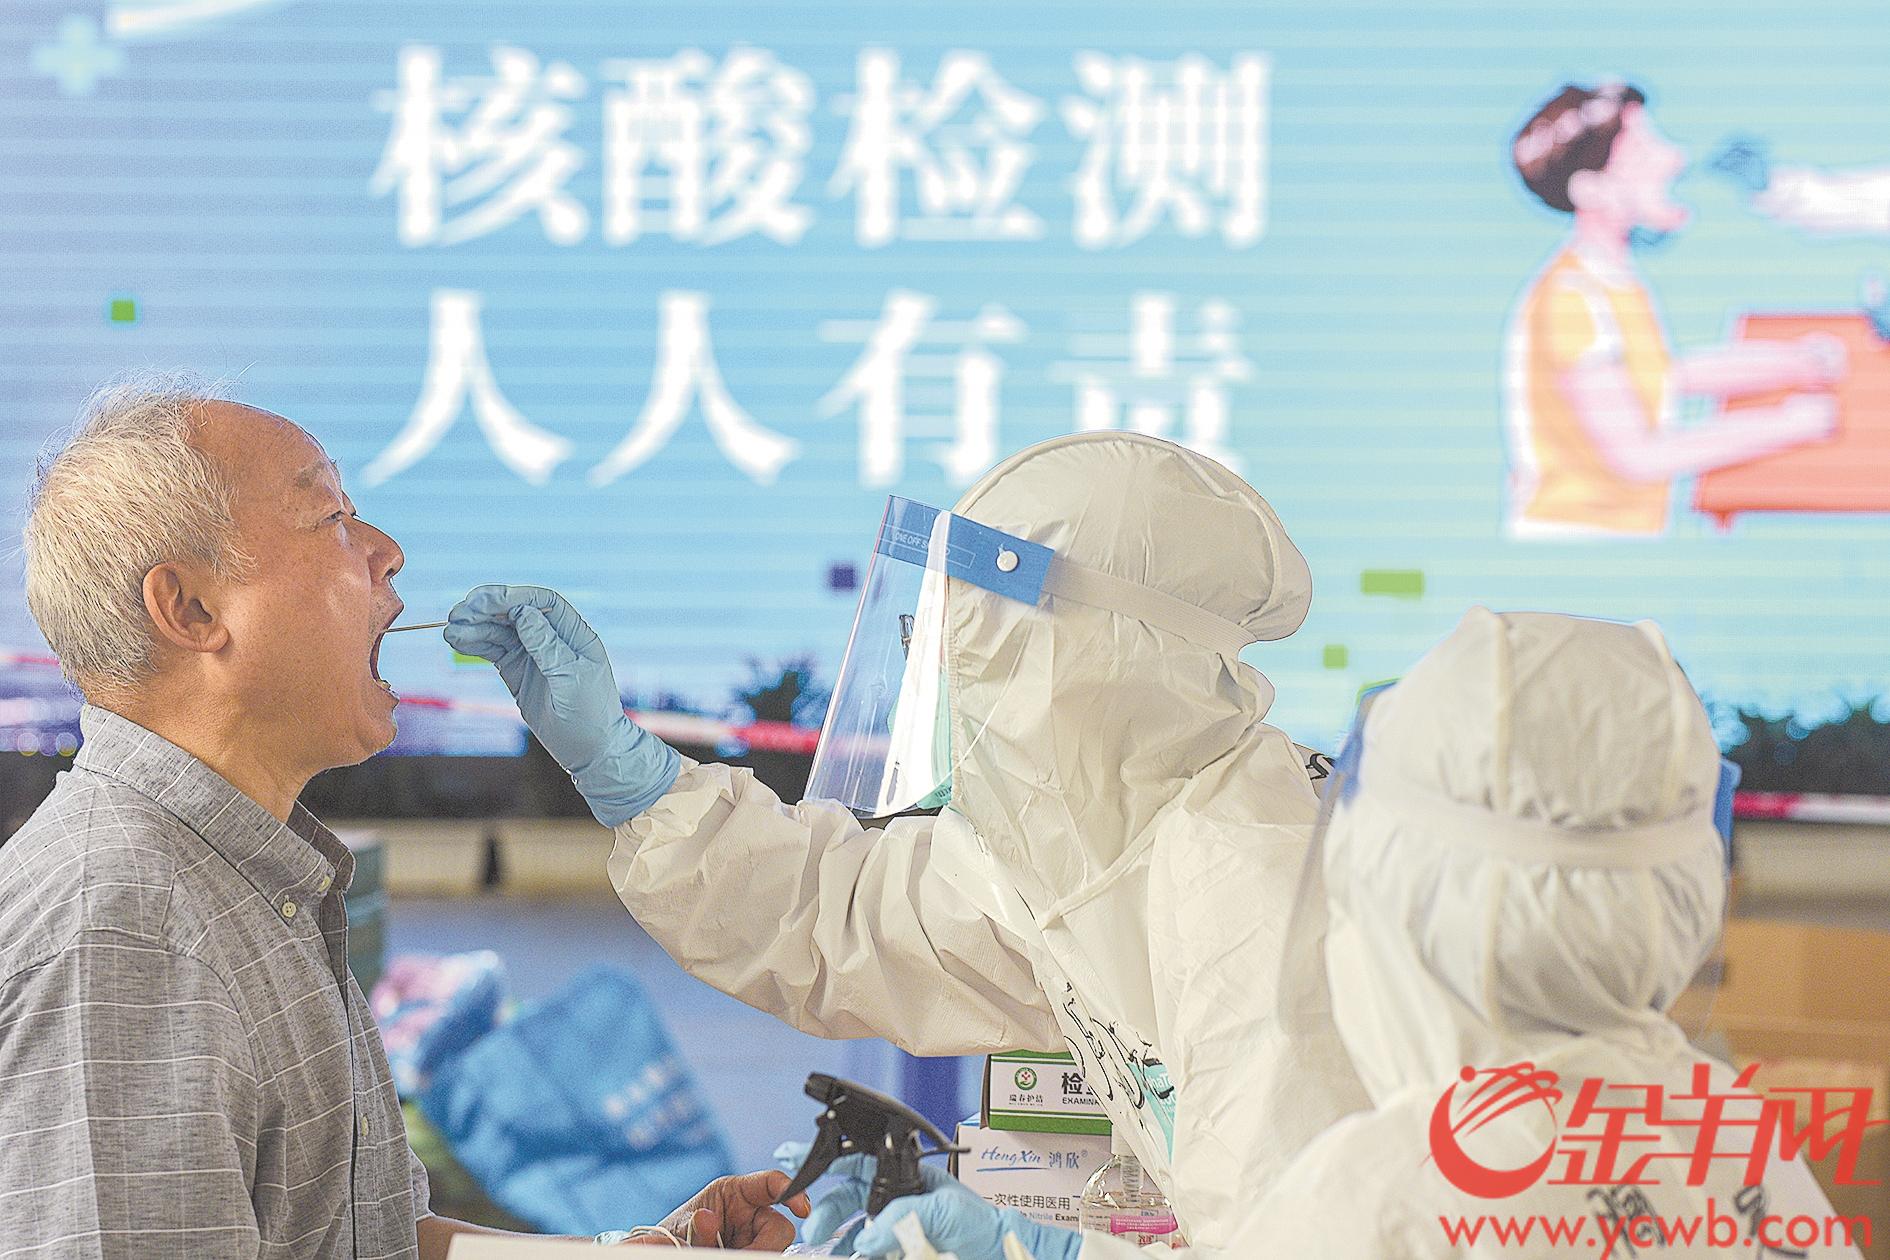 广州市扩大全员核酸检测范围 涉及天河白云番禺重点区域